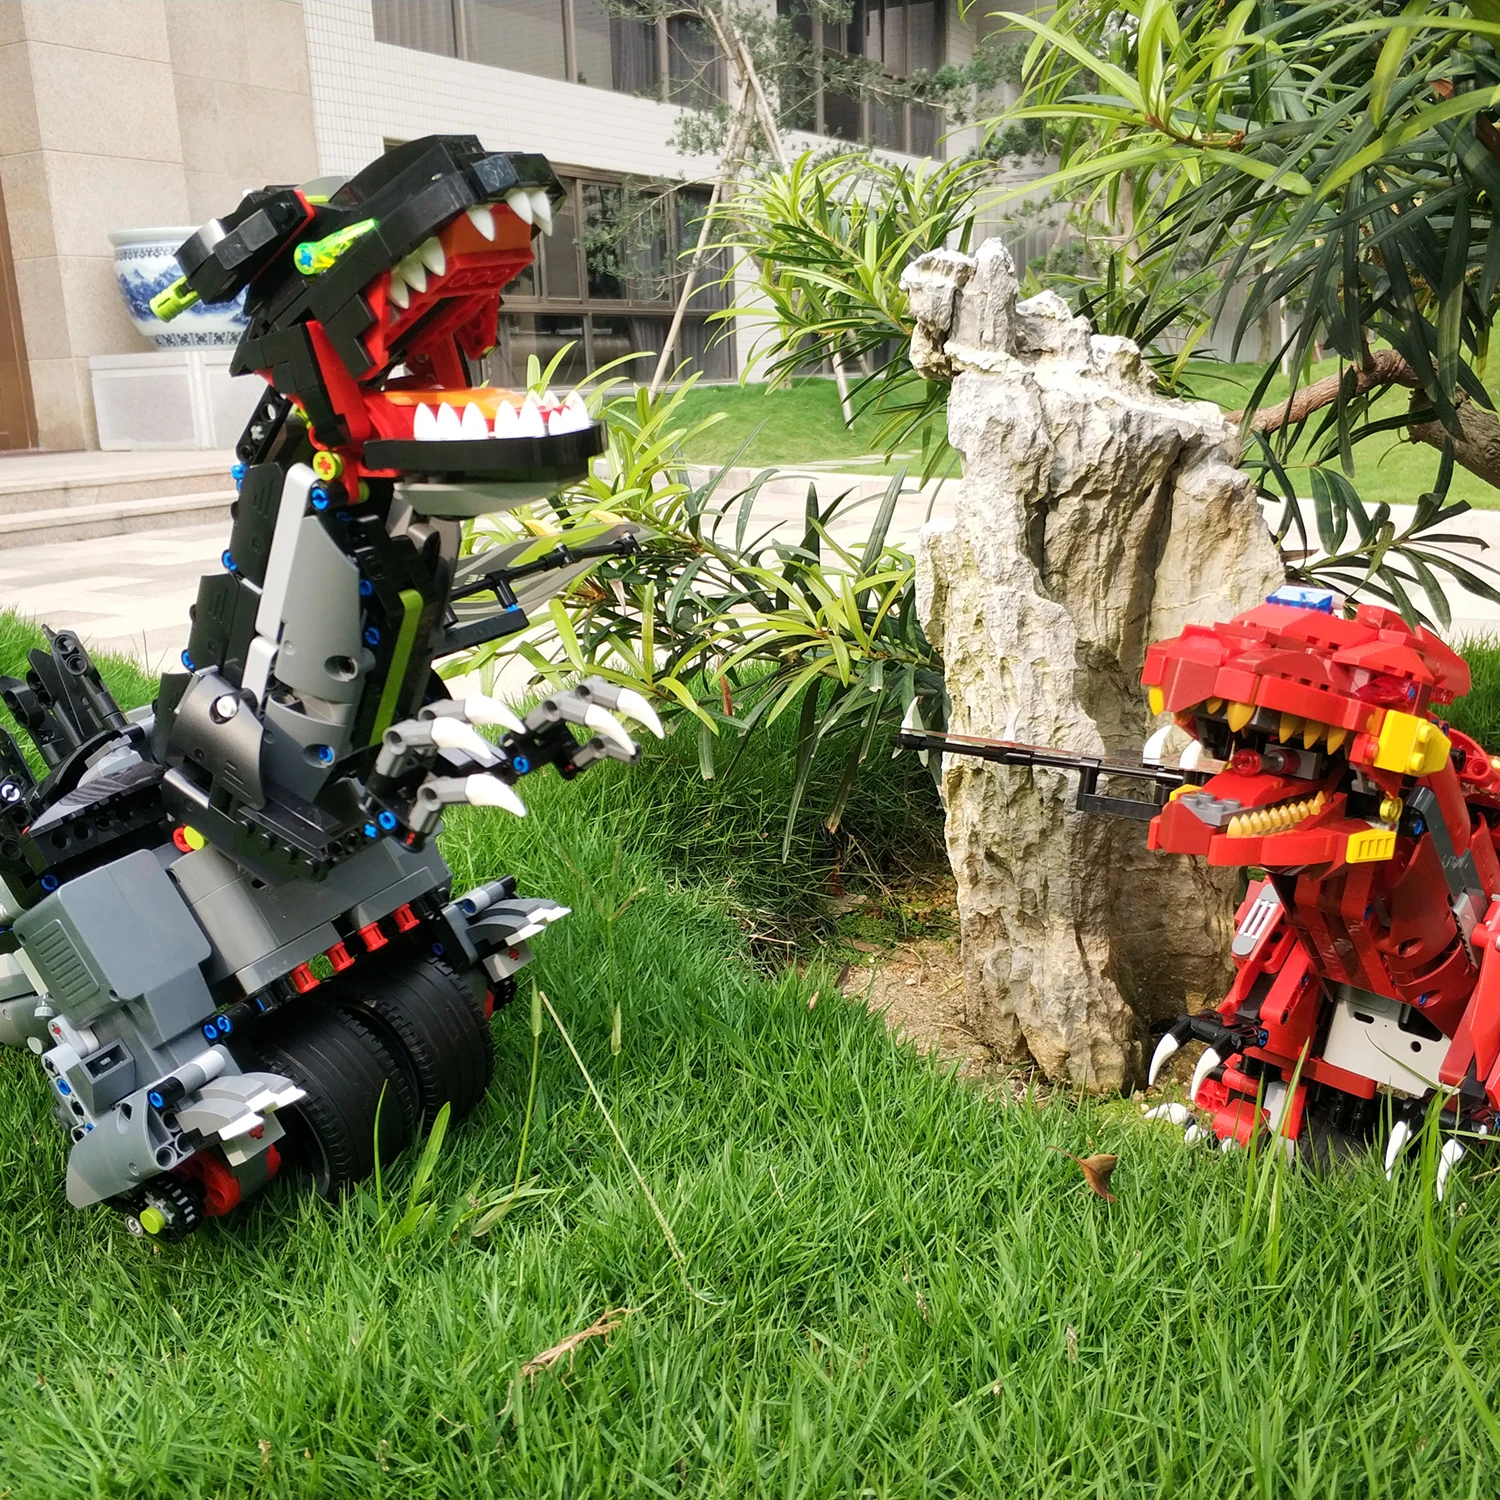 GOOLRC RC Робот строительные блоки робота Обучающие кирпичи стебель игрушки DIY сборка сбалансированное Программирование динозавр робот 2,4 г игрушки для детей